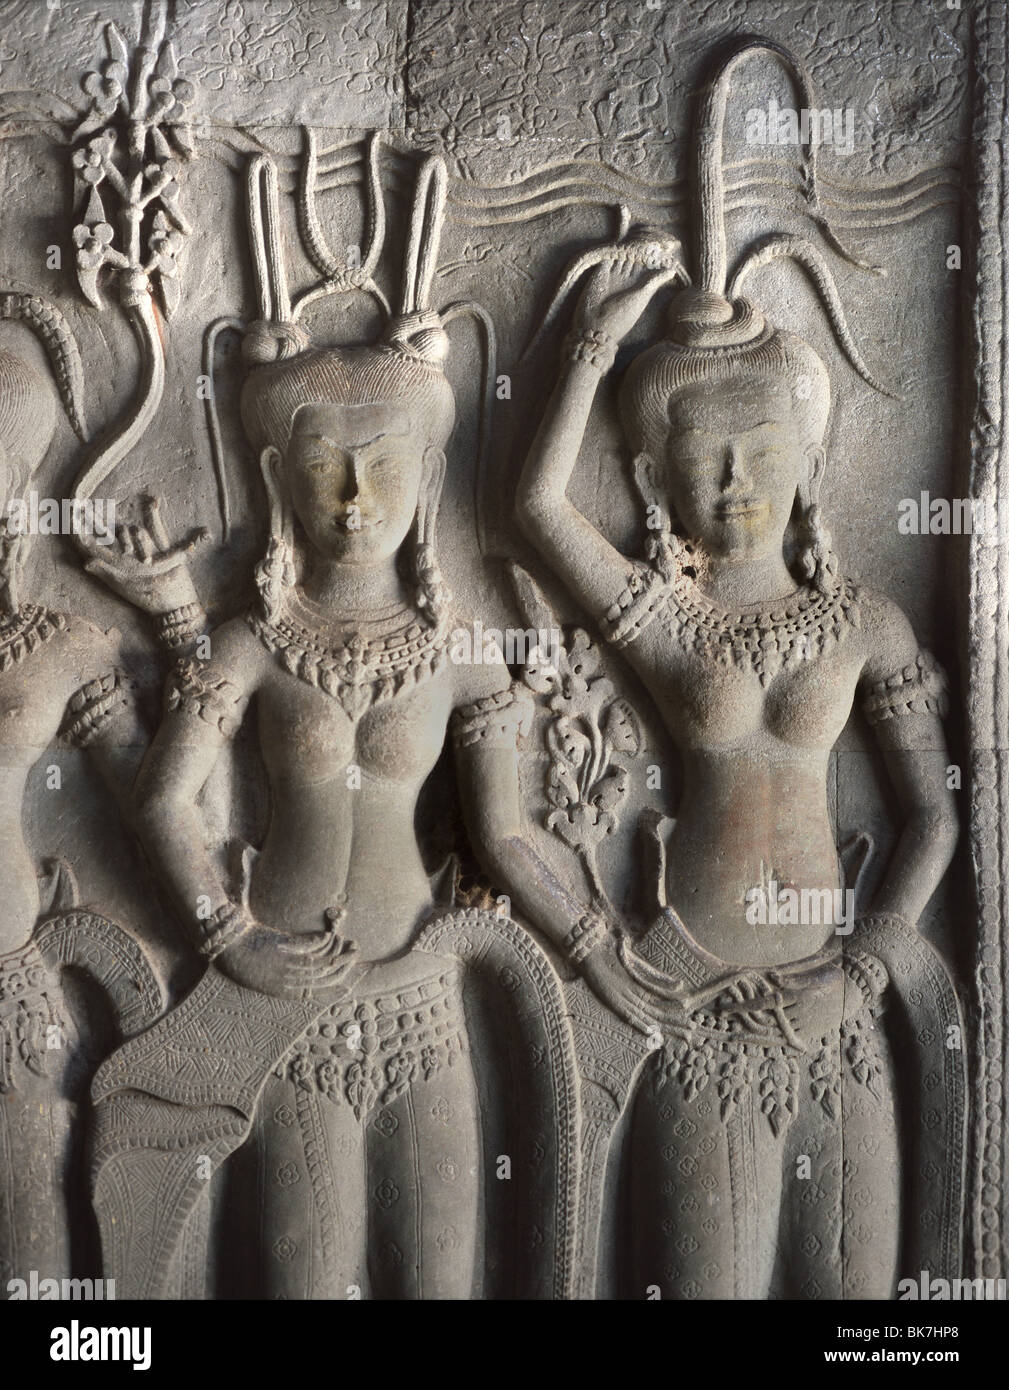 Détail de sculptures en relief du 12ème siècle, Angkor Wat, Angkor, Site du patrimoine mondial de l'UNESCO, au Cambodge Banque D'Images